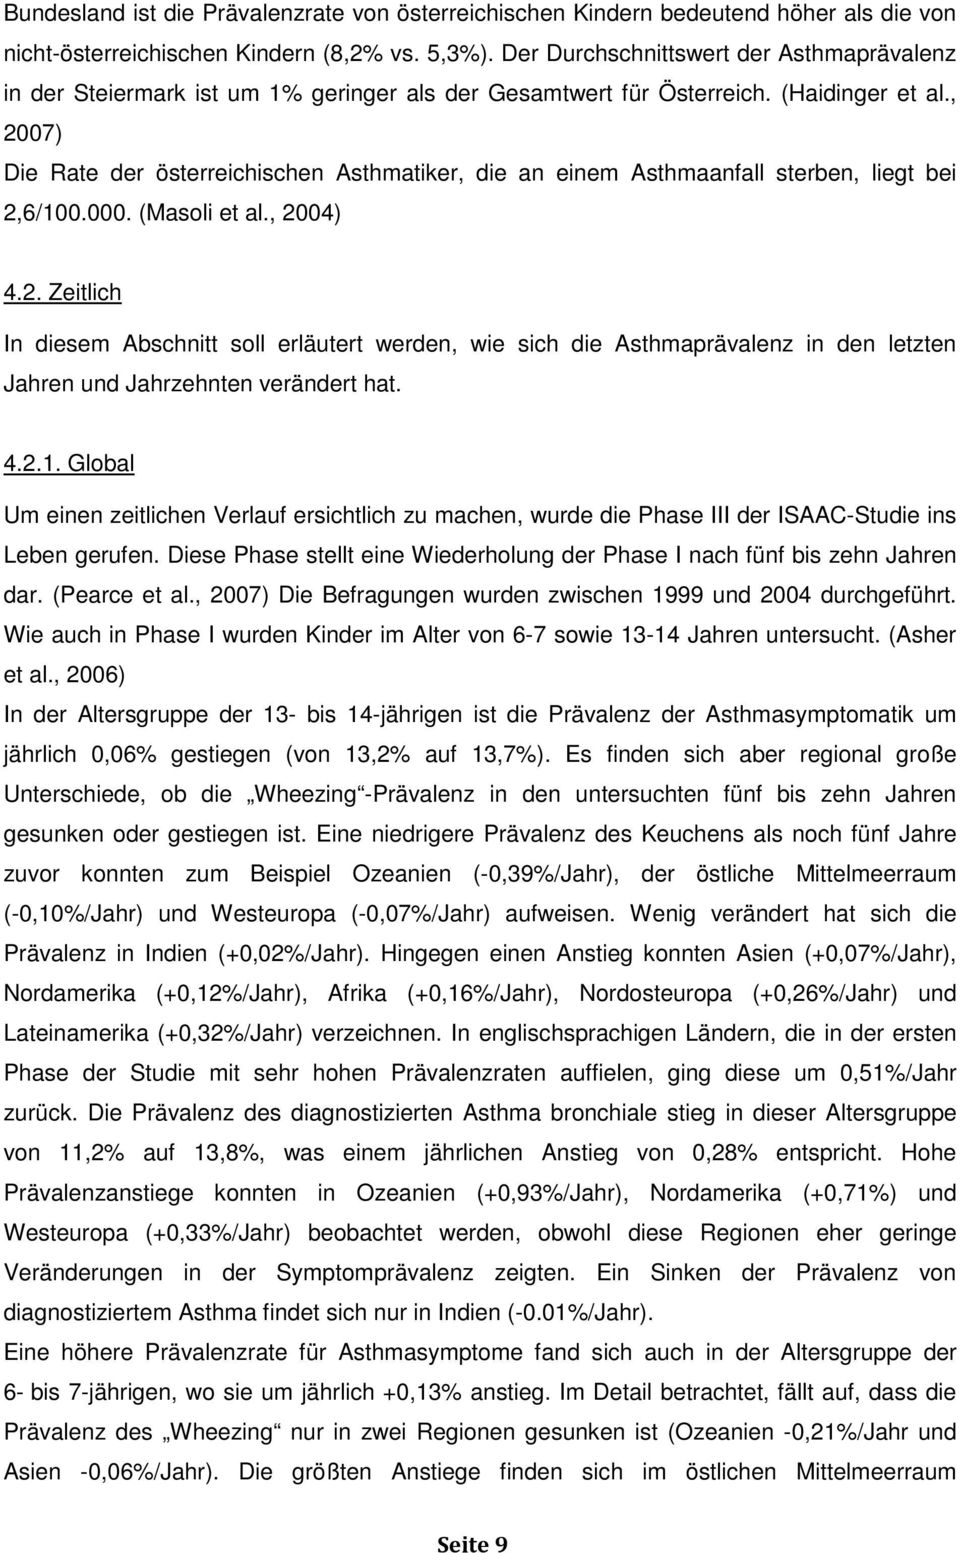 , 2007) Die Rate der österreichischen Asthmatiker, die an einem Asthmaanfall sterben, liegt bei 2,6/100.000. (Masoli et al., 2004) 4.2. Zeitlich In diesem Abschnitt soll erläutert werden, wie sich die Asthmaprävalenz in den letzten Jahren und Jahrzehnten verändert hat.